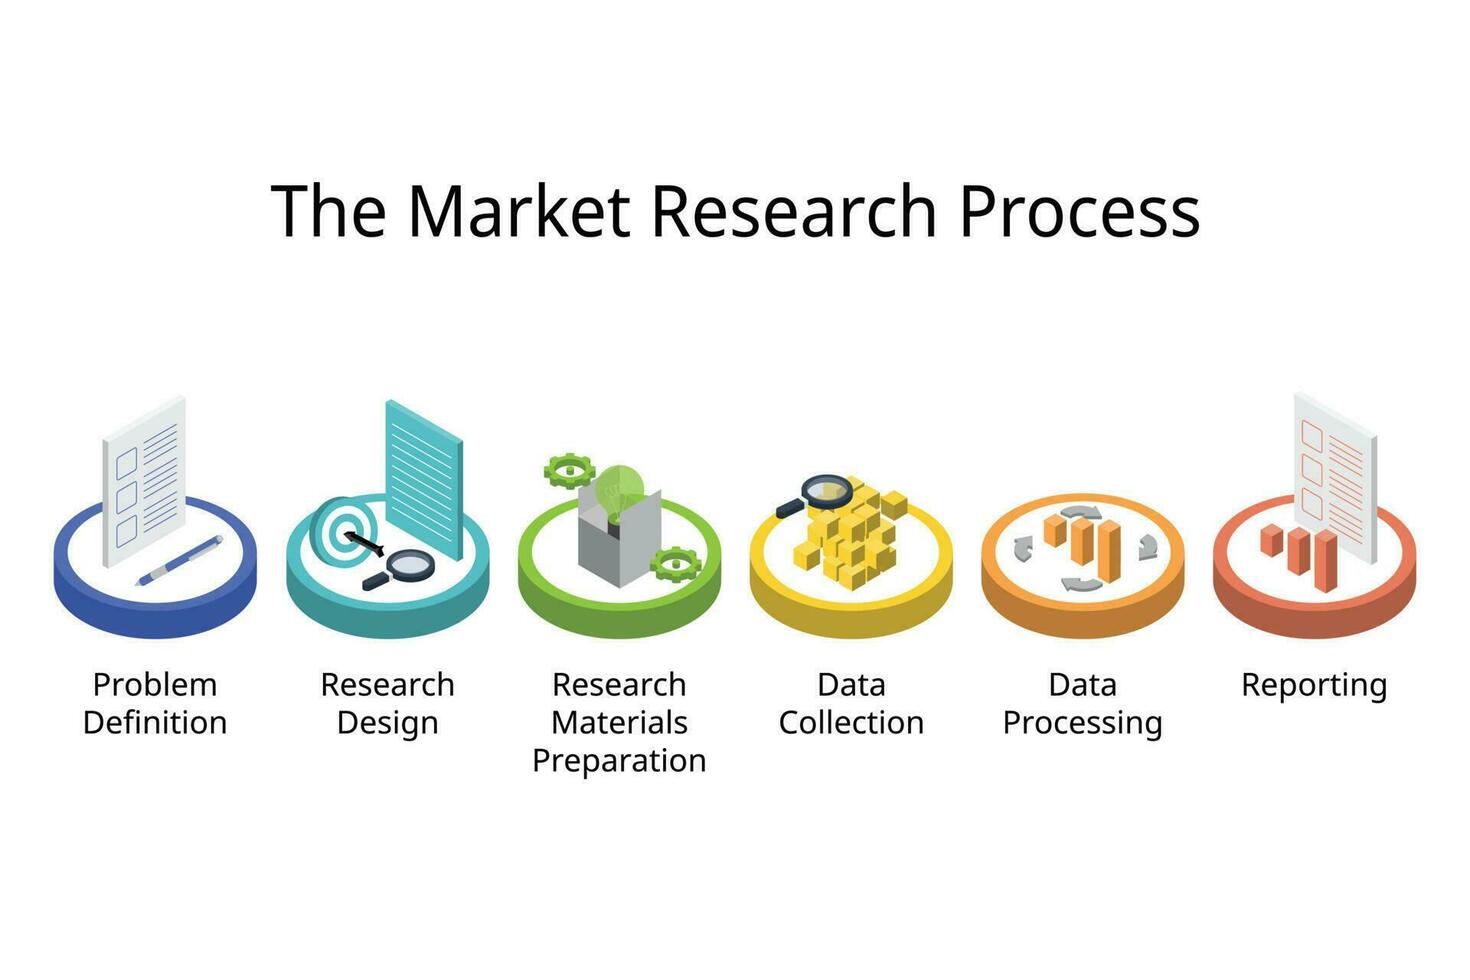 márketing investigación proceso es el proceso de coleccionar y analizando datos desde consumidores y competidores a ayuda negocios explorar quien su objetivo cliente vector